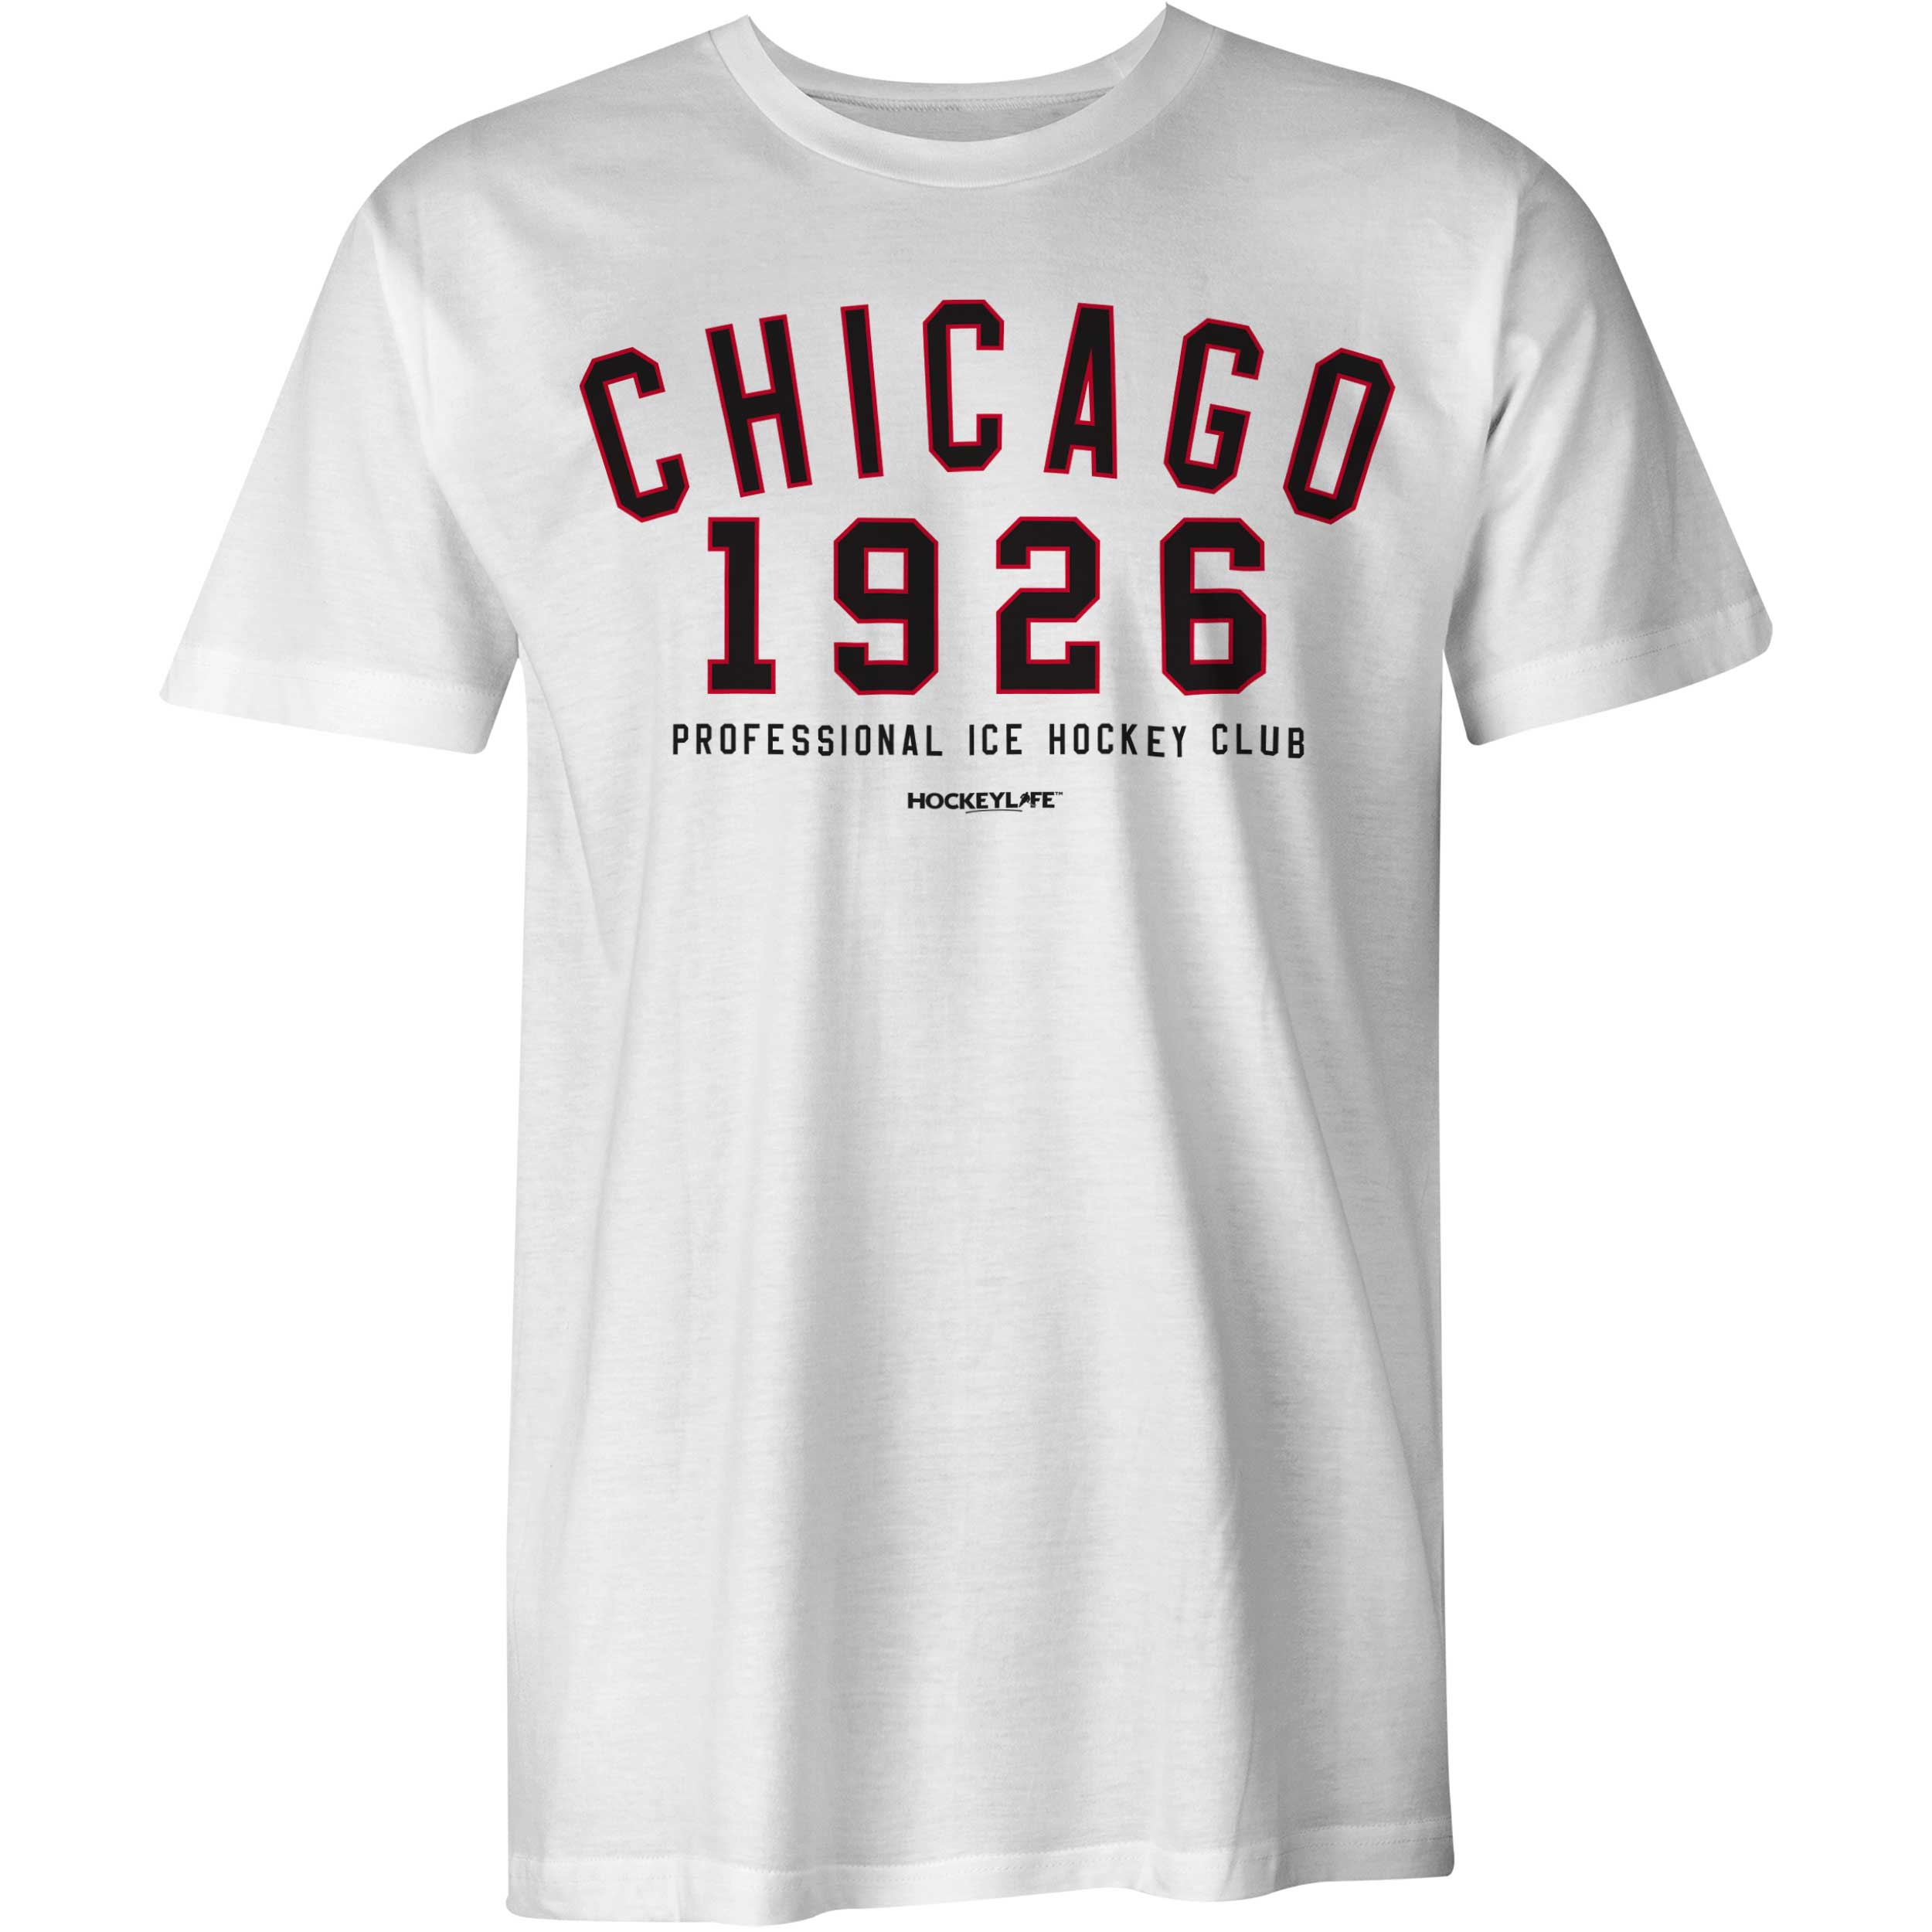 Chicago Professional Hockey Club Tee Shirt (White) Small